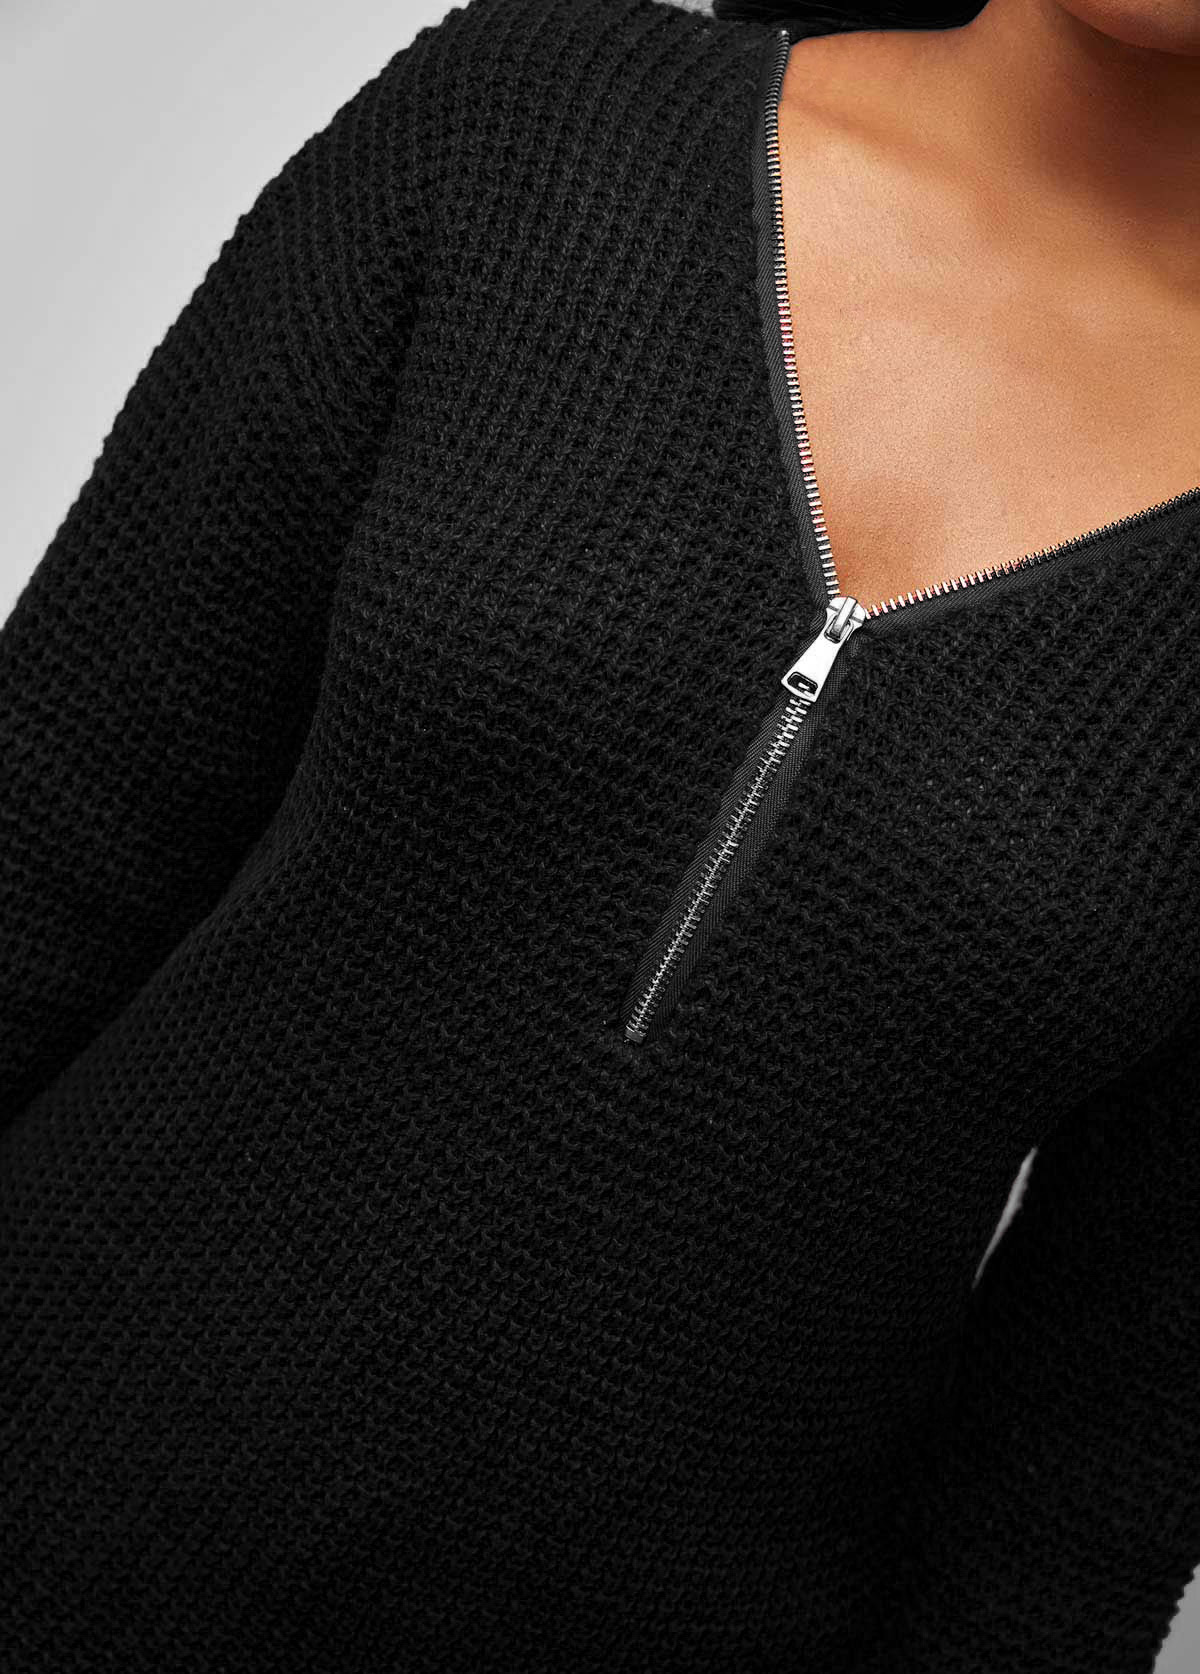 Quarter Zip V Neck Black Long Sleeve Sweater